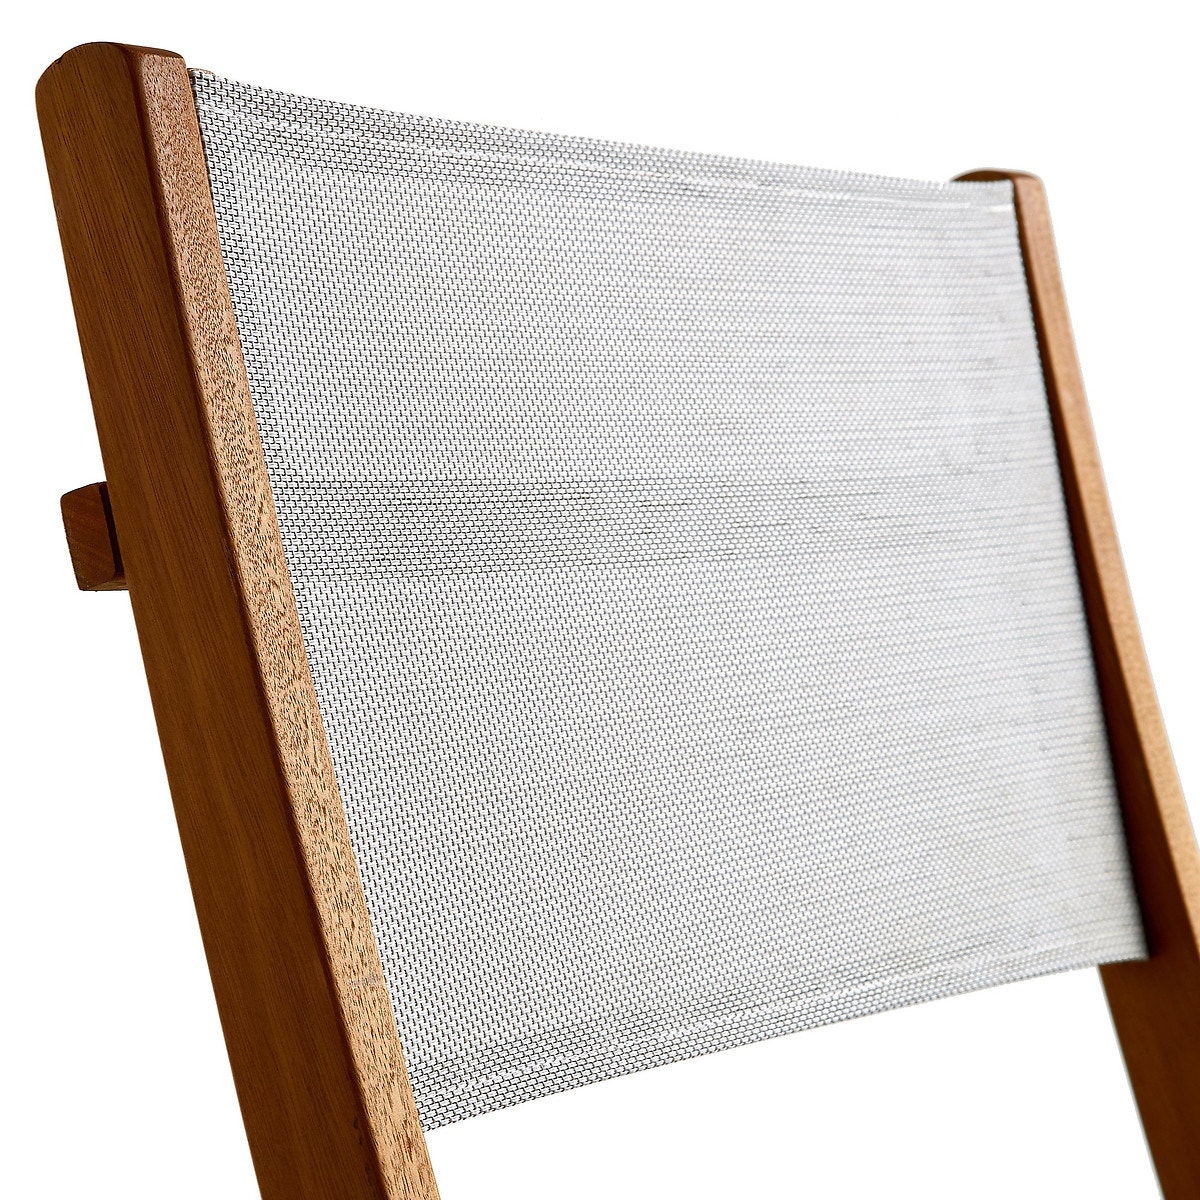 Αναδιπλούμενη καρέκλα από μασίφ, σετ των 2